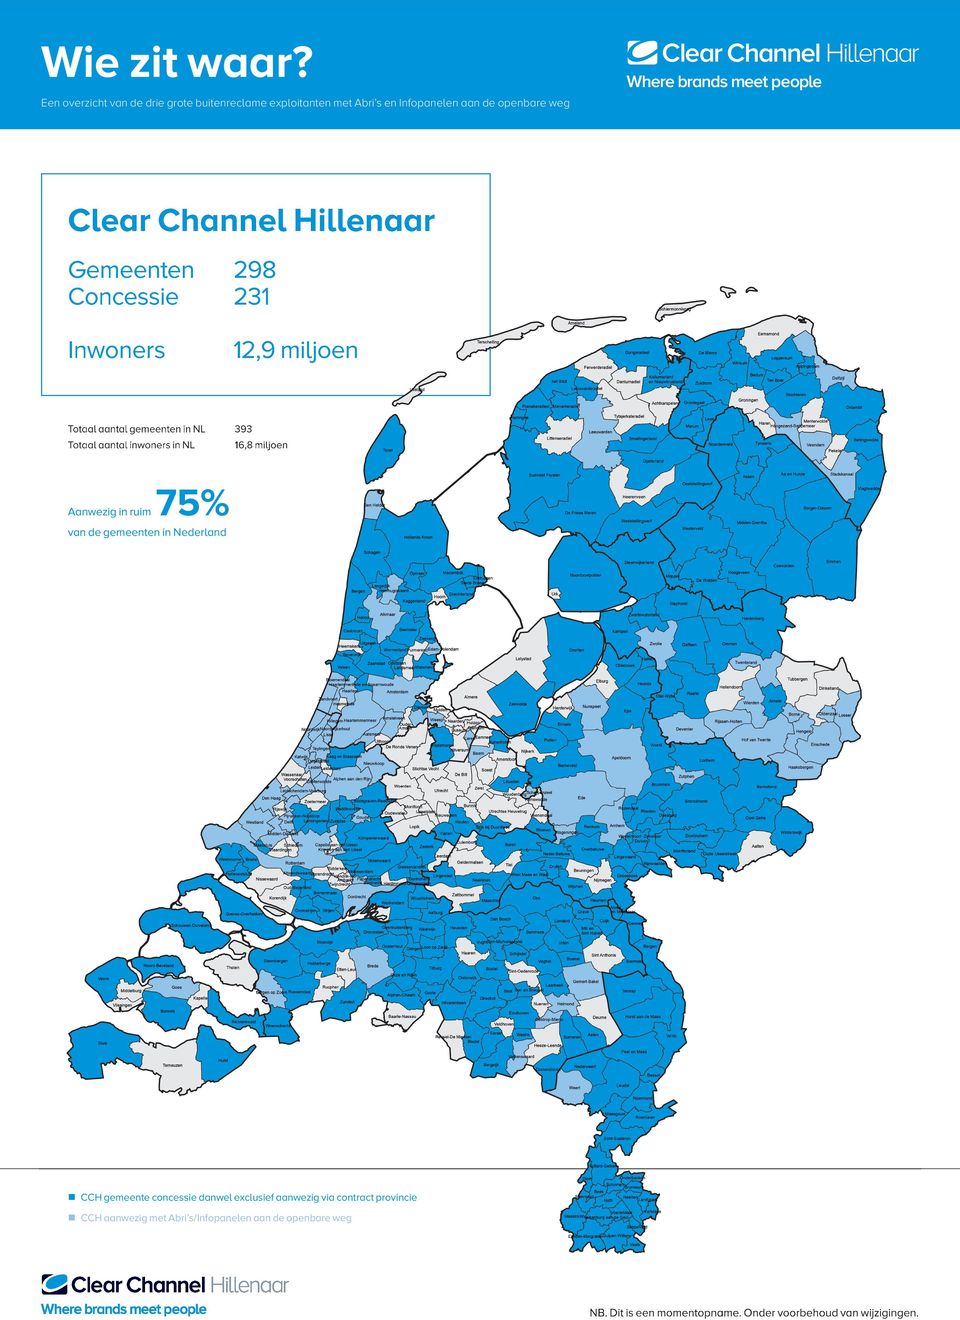 gemeenten in NL 393 Totaal aantal in NL 16,8 miljoen Aanwezig in ruim 75% van de